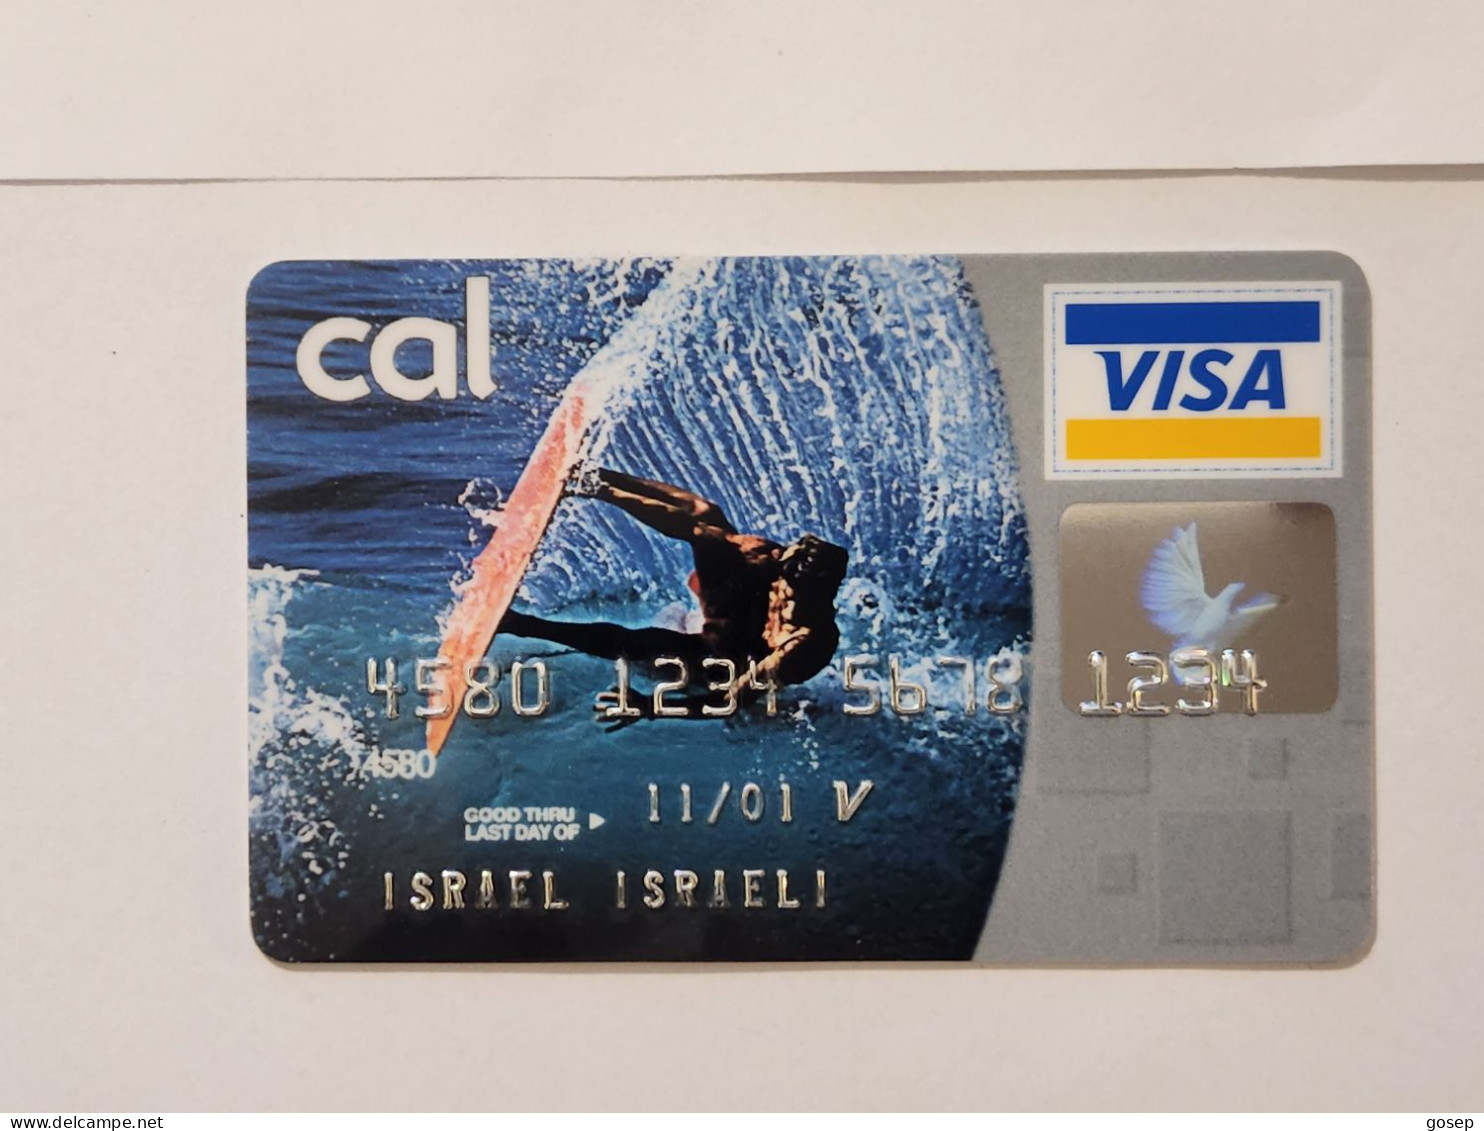 ISRAEL-CALL VISA ELECTRON-(4580-1234-5678-1234)(A Special Rare Experimental Card)-(E)-(01.11.01)-Good Card - Krediet Kaarten (vervaldatum Min. 10 Jaar)